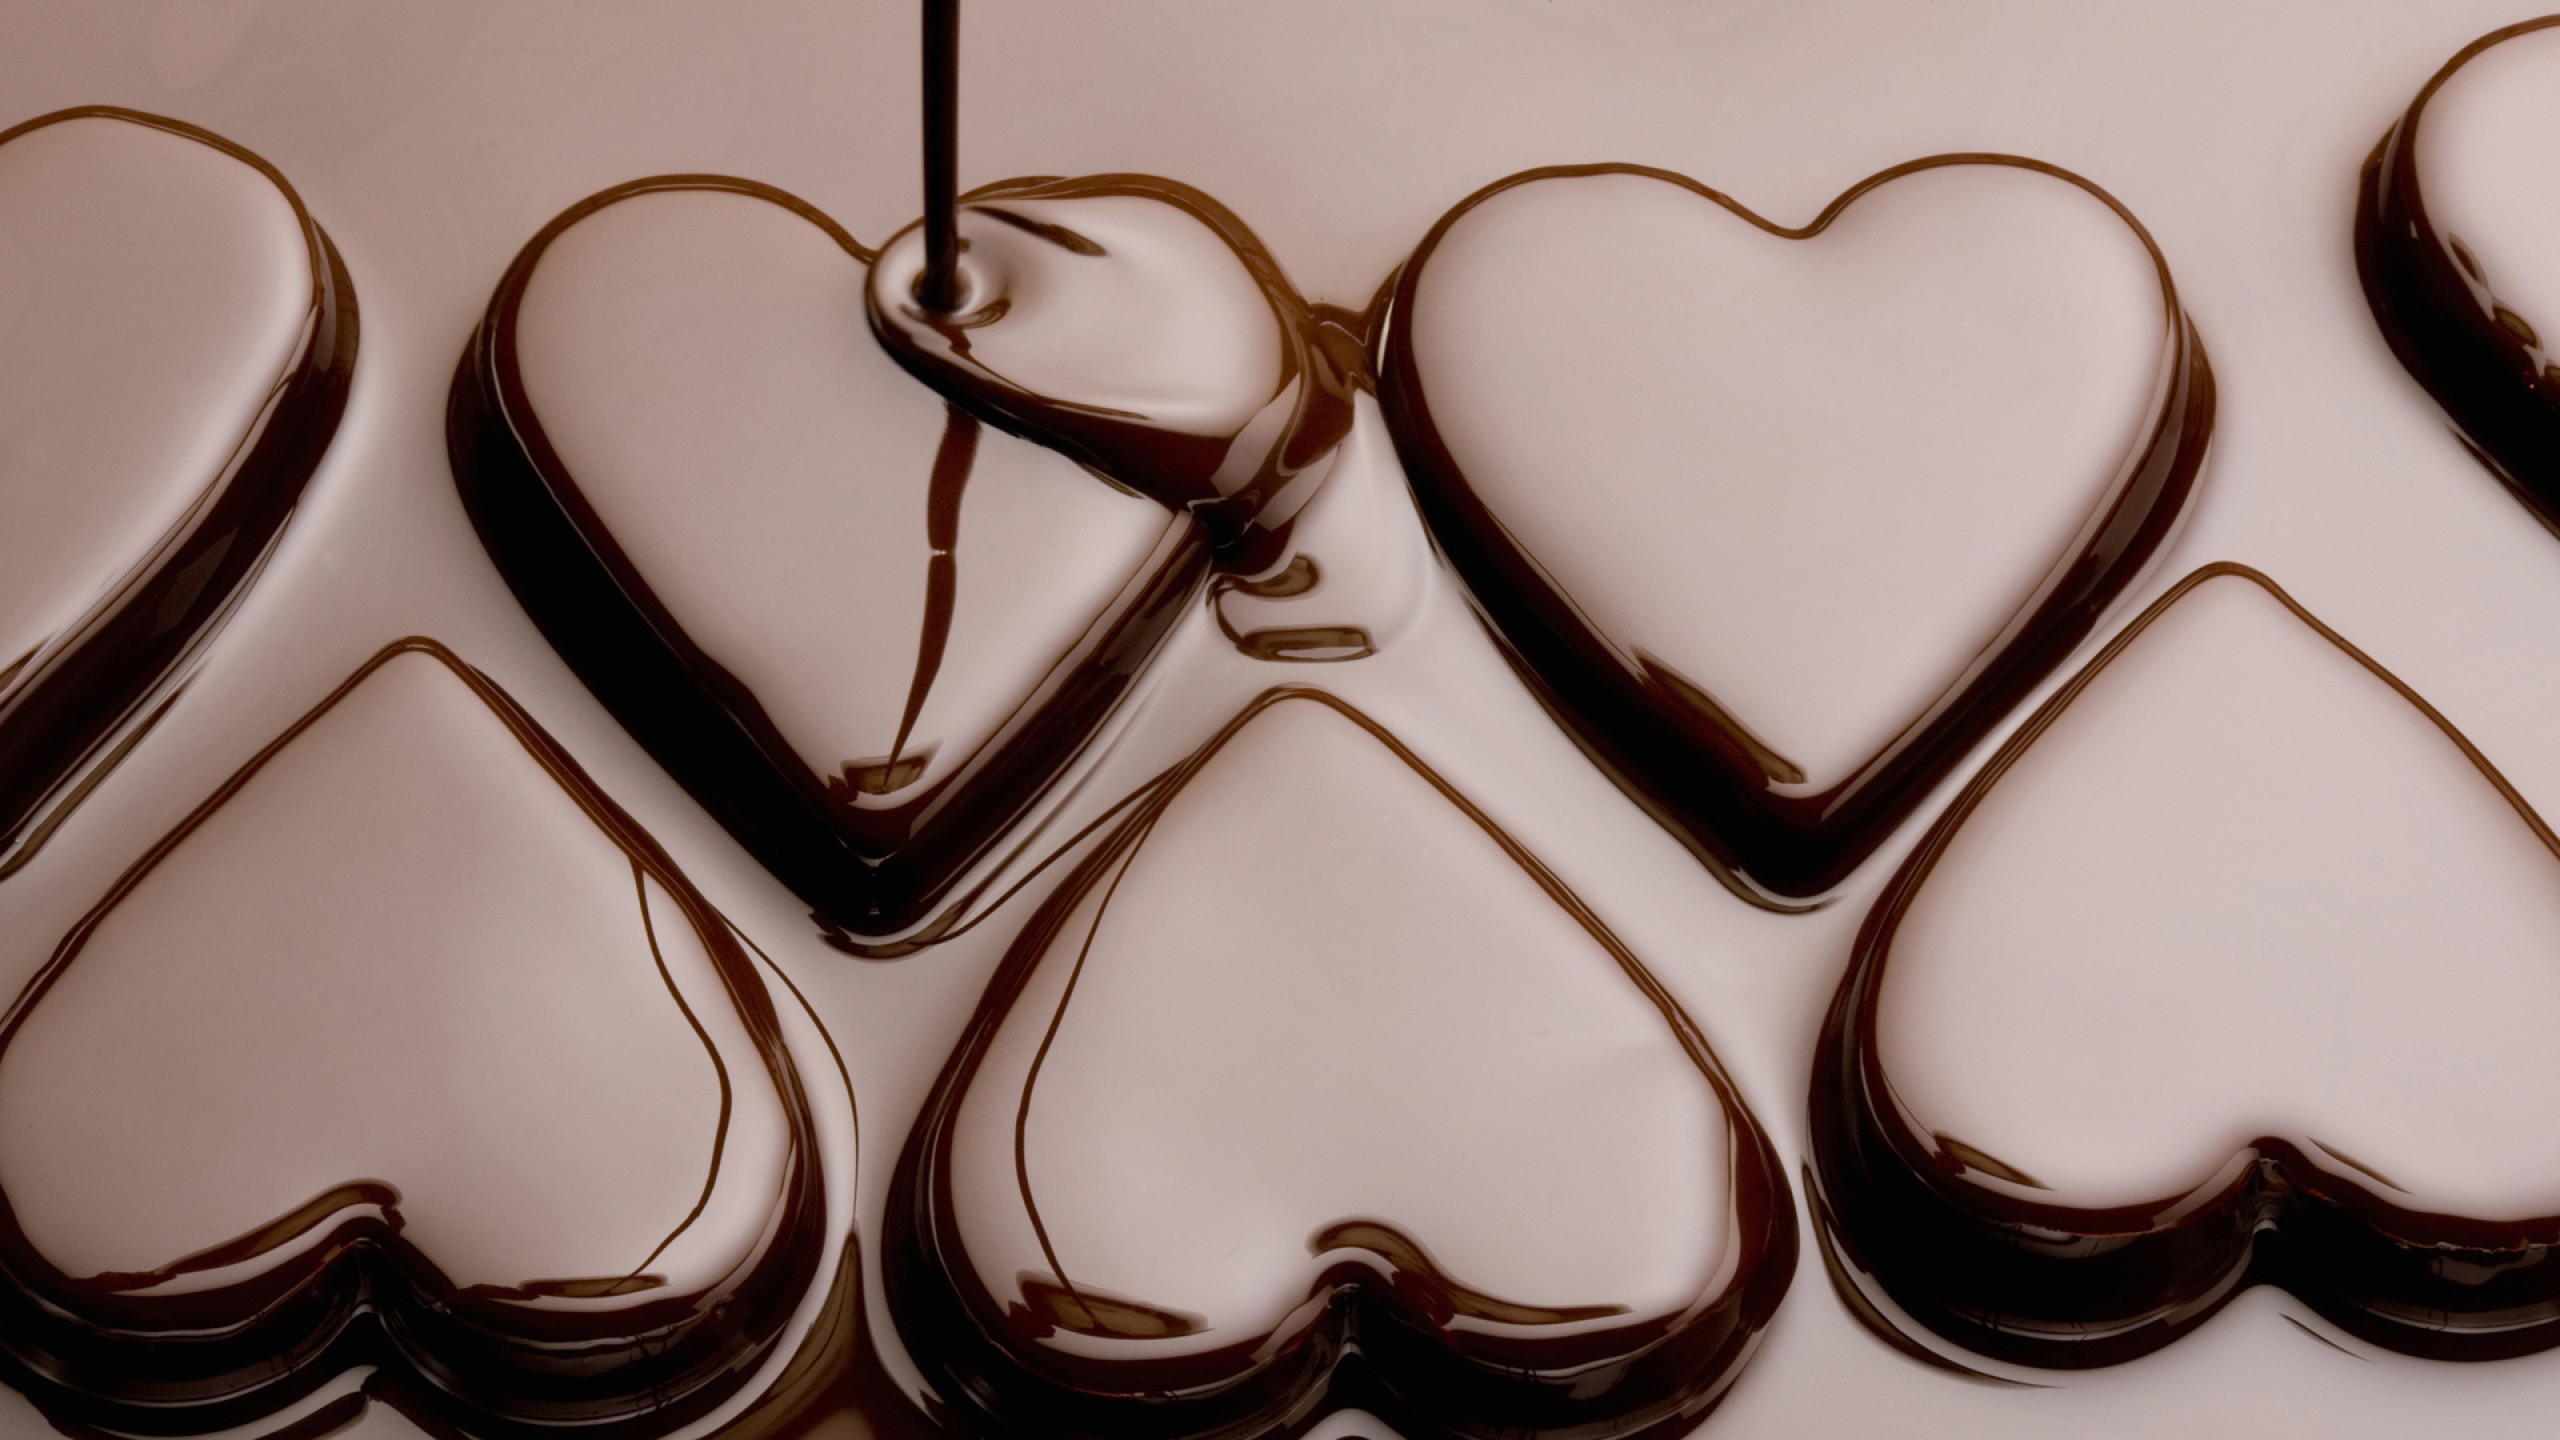 Bộ hình nền Chocolate ngọt ngào nhất cho những người hảo ngọt - [Kích thước hình ảnh: 2560x1440 px]